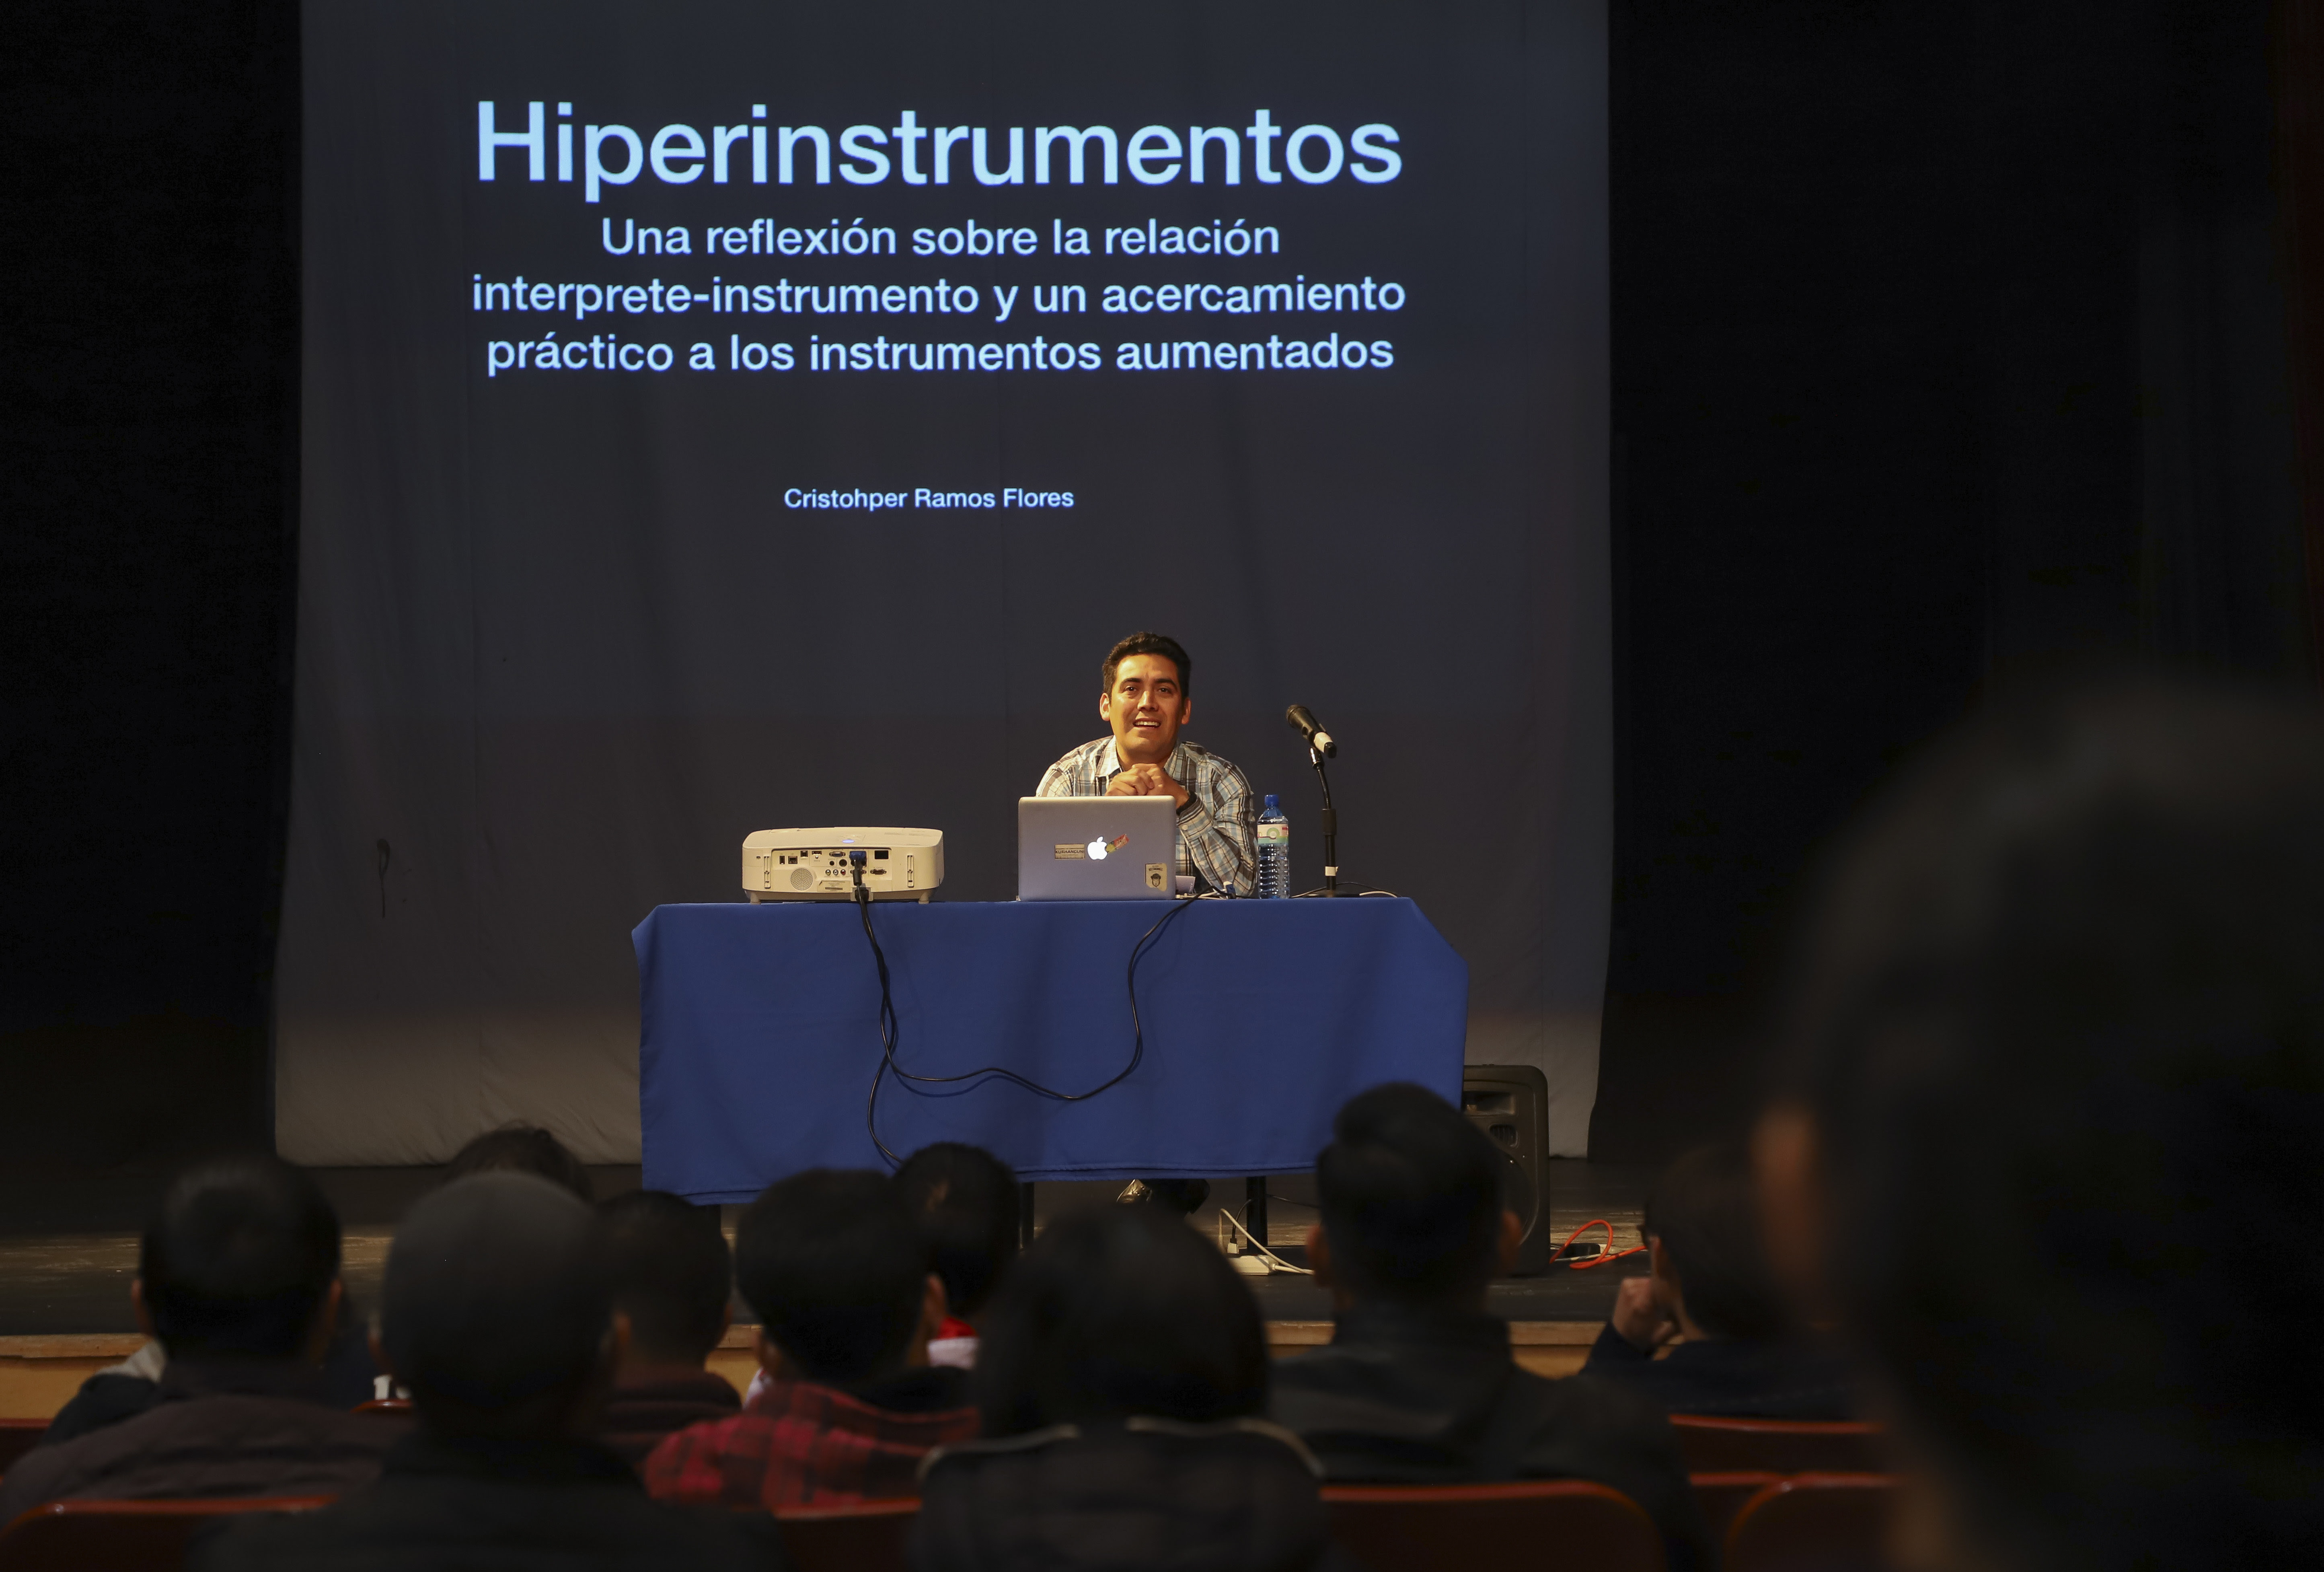  Imparten cátedra de “hiperinstrumentos” en Facultad de Bellas Artes de la UAQ